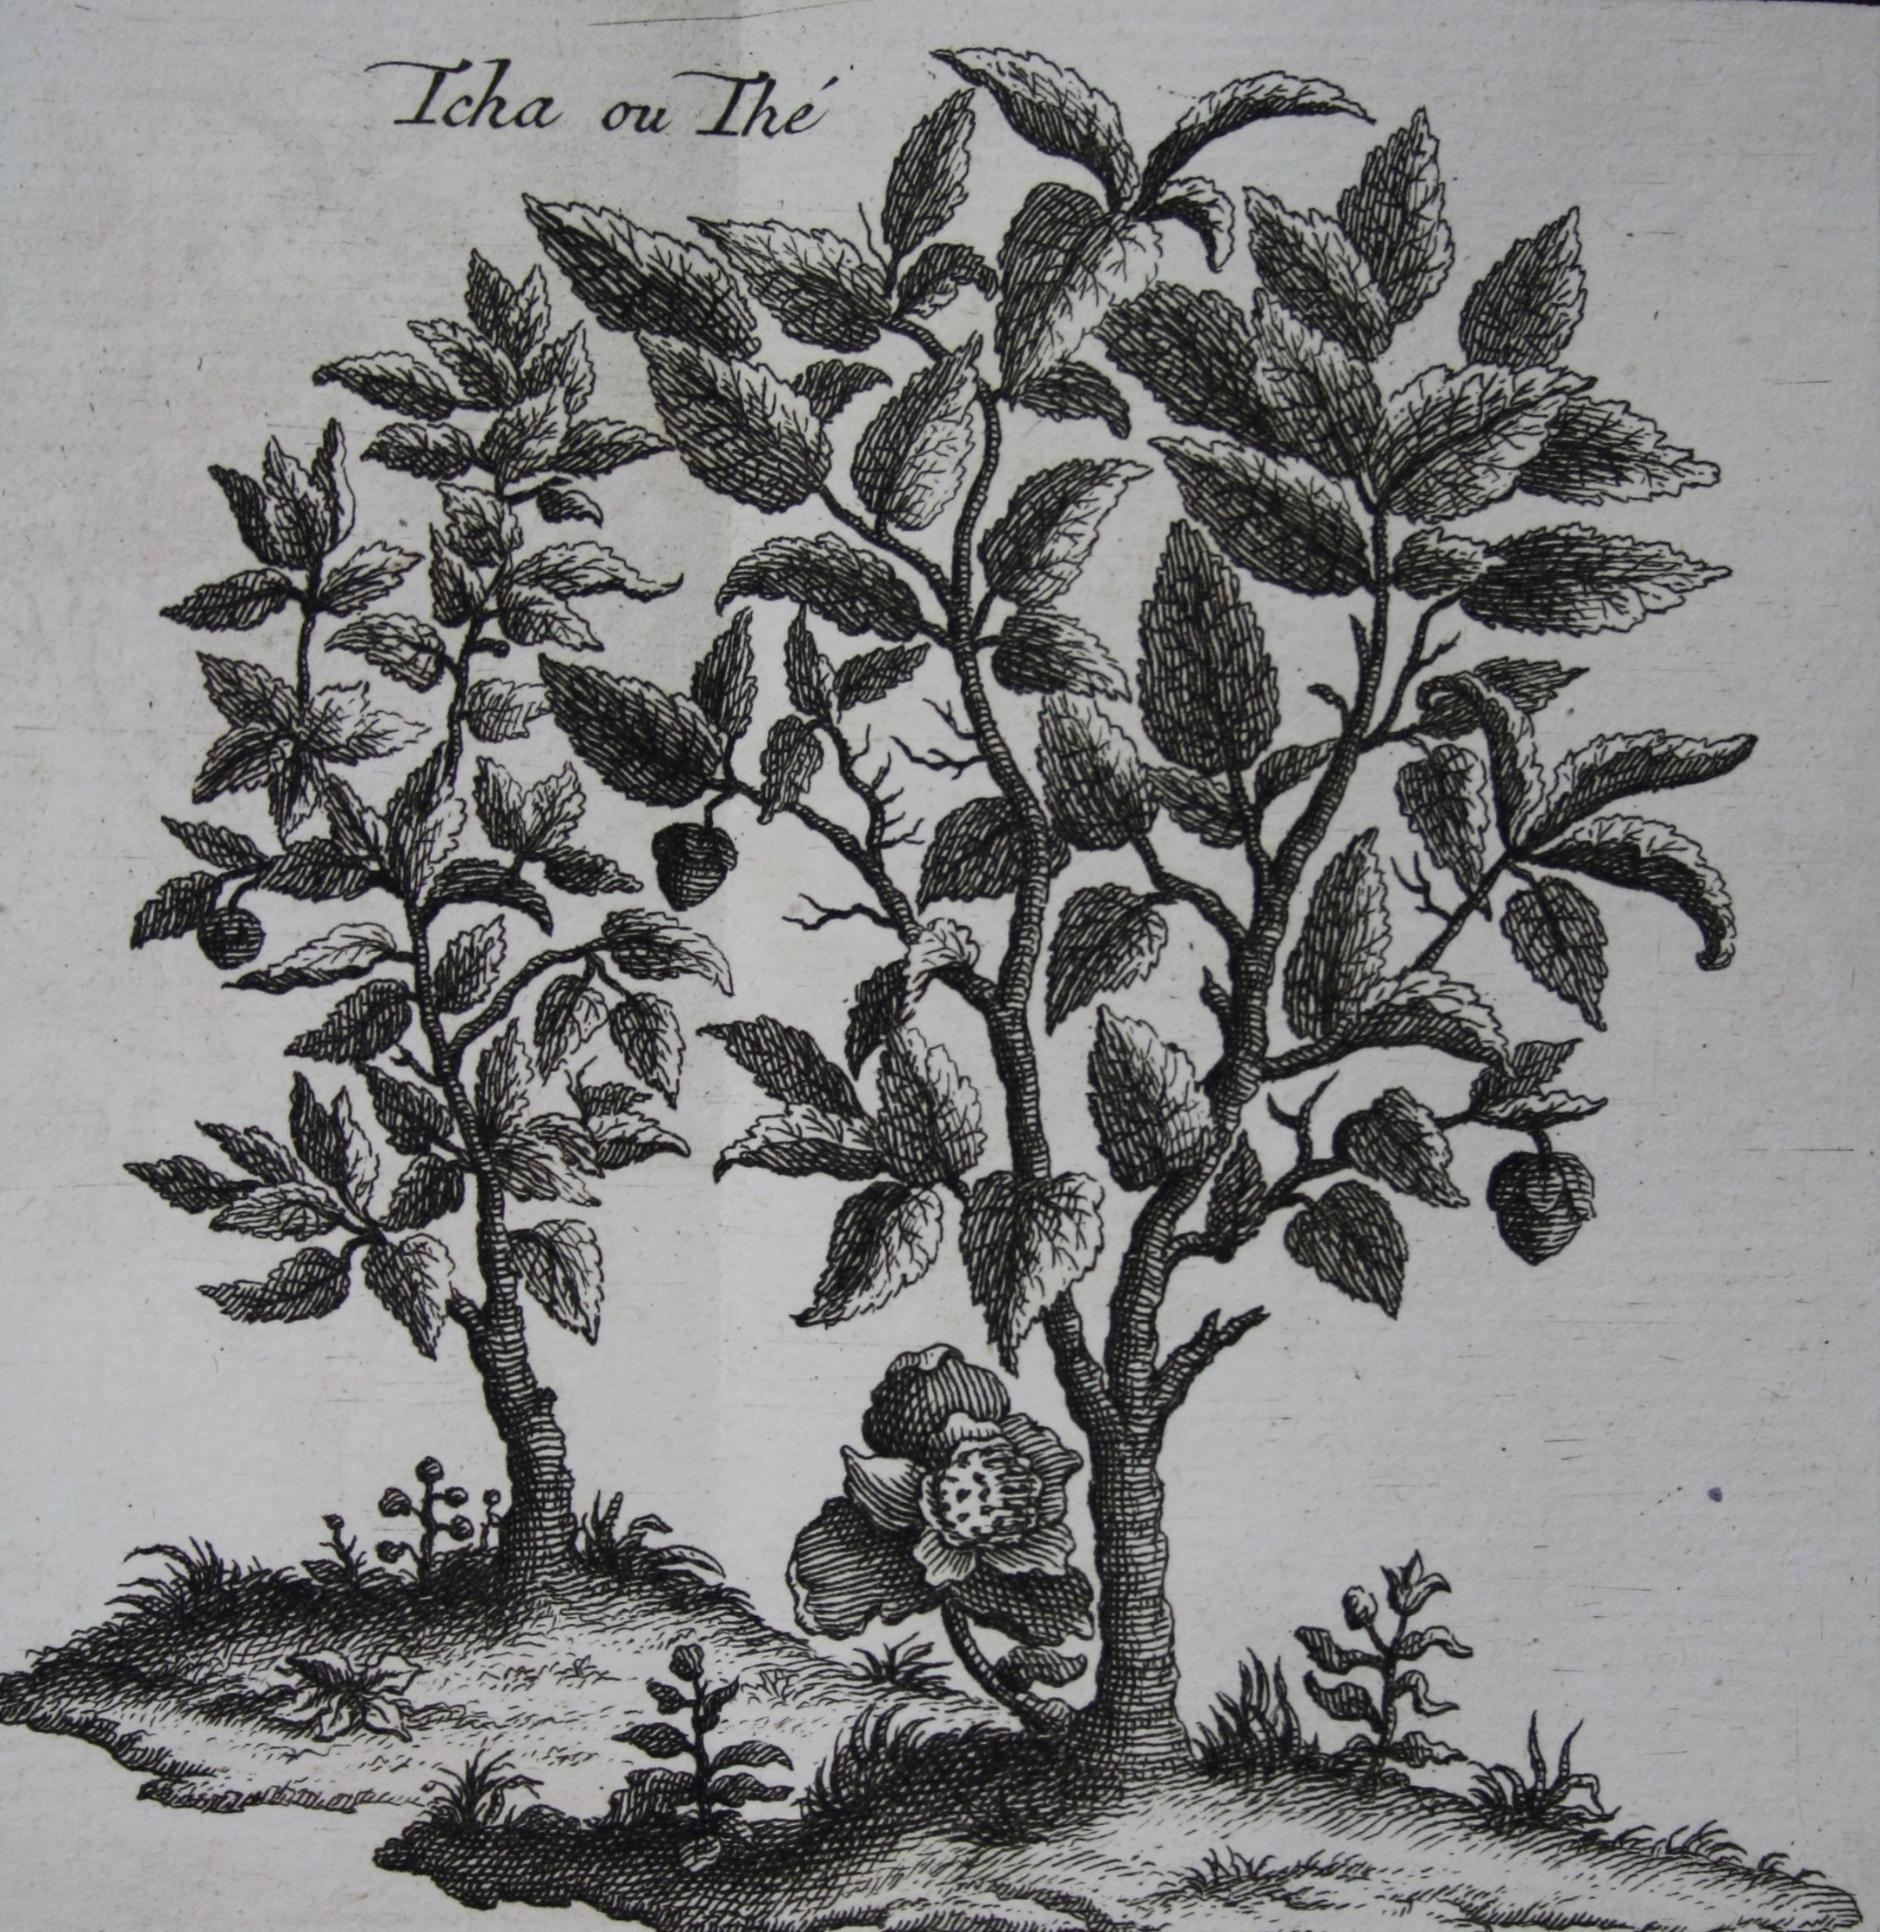 Teepflanze, wie sie von Fortune aus China nach Indien gebracht wurde - Jean-Baptiste Du Halde, Description de l'Empire de la Chine, Band 2, A La Haye 1736 (Martinus-Bibliothek Mainz, 13/1070) (c) Martinus-Bibliothek